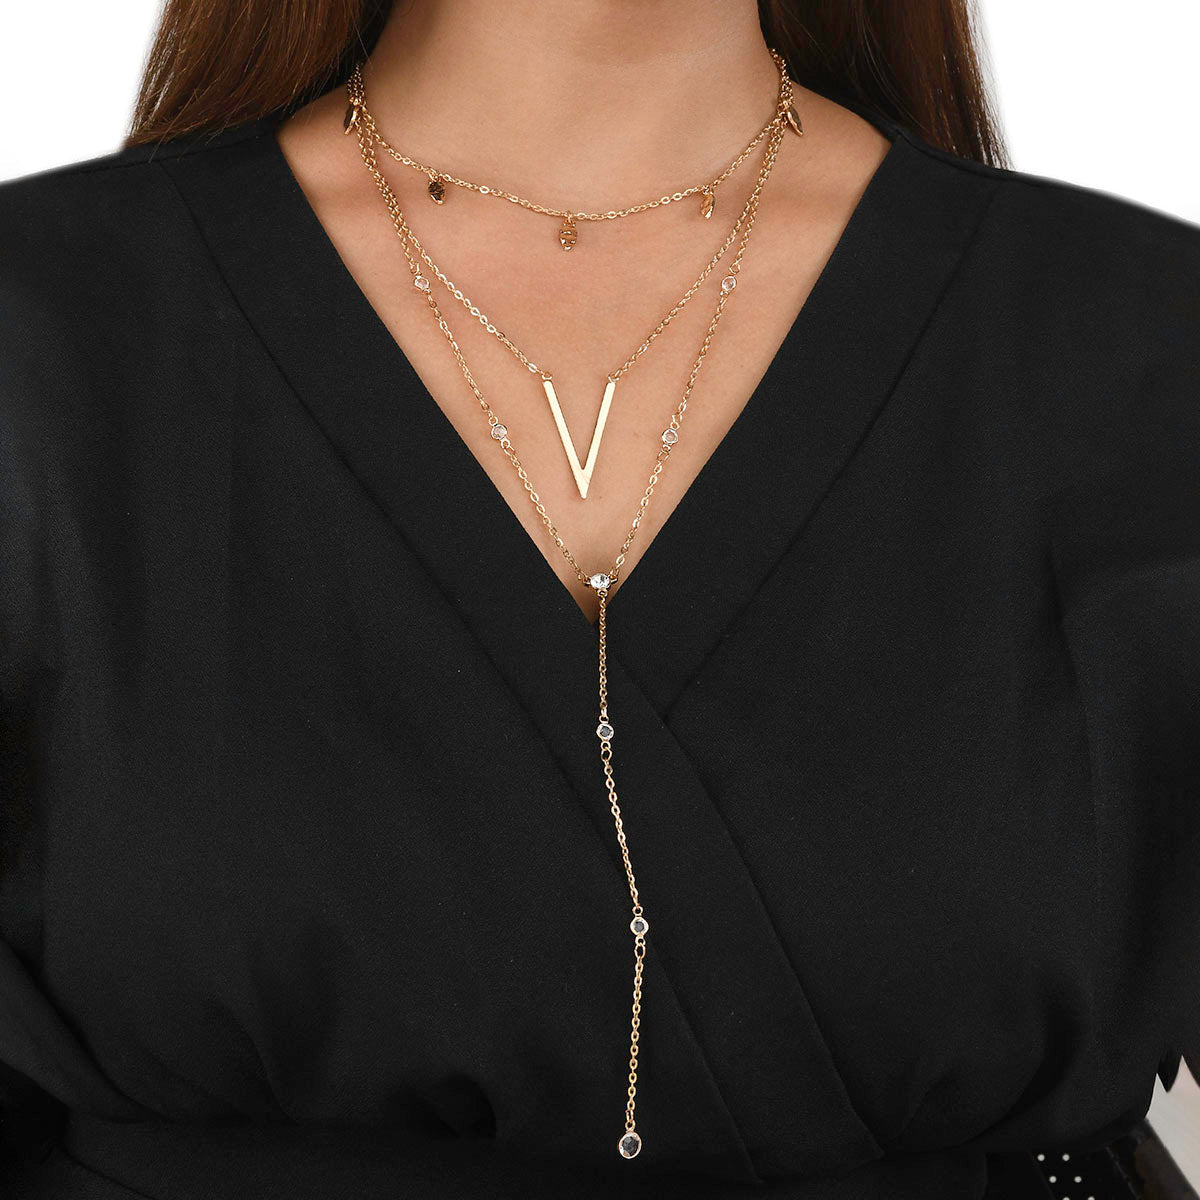 Women's Trendy Essentials Contemporary Necklace - Voylla